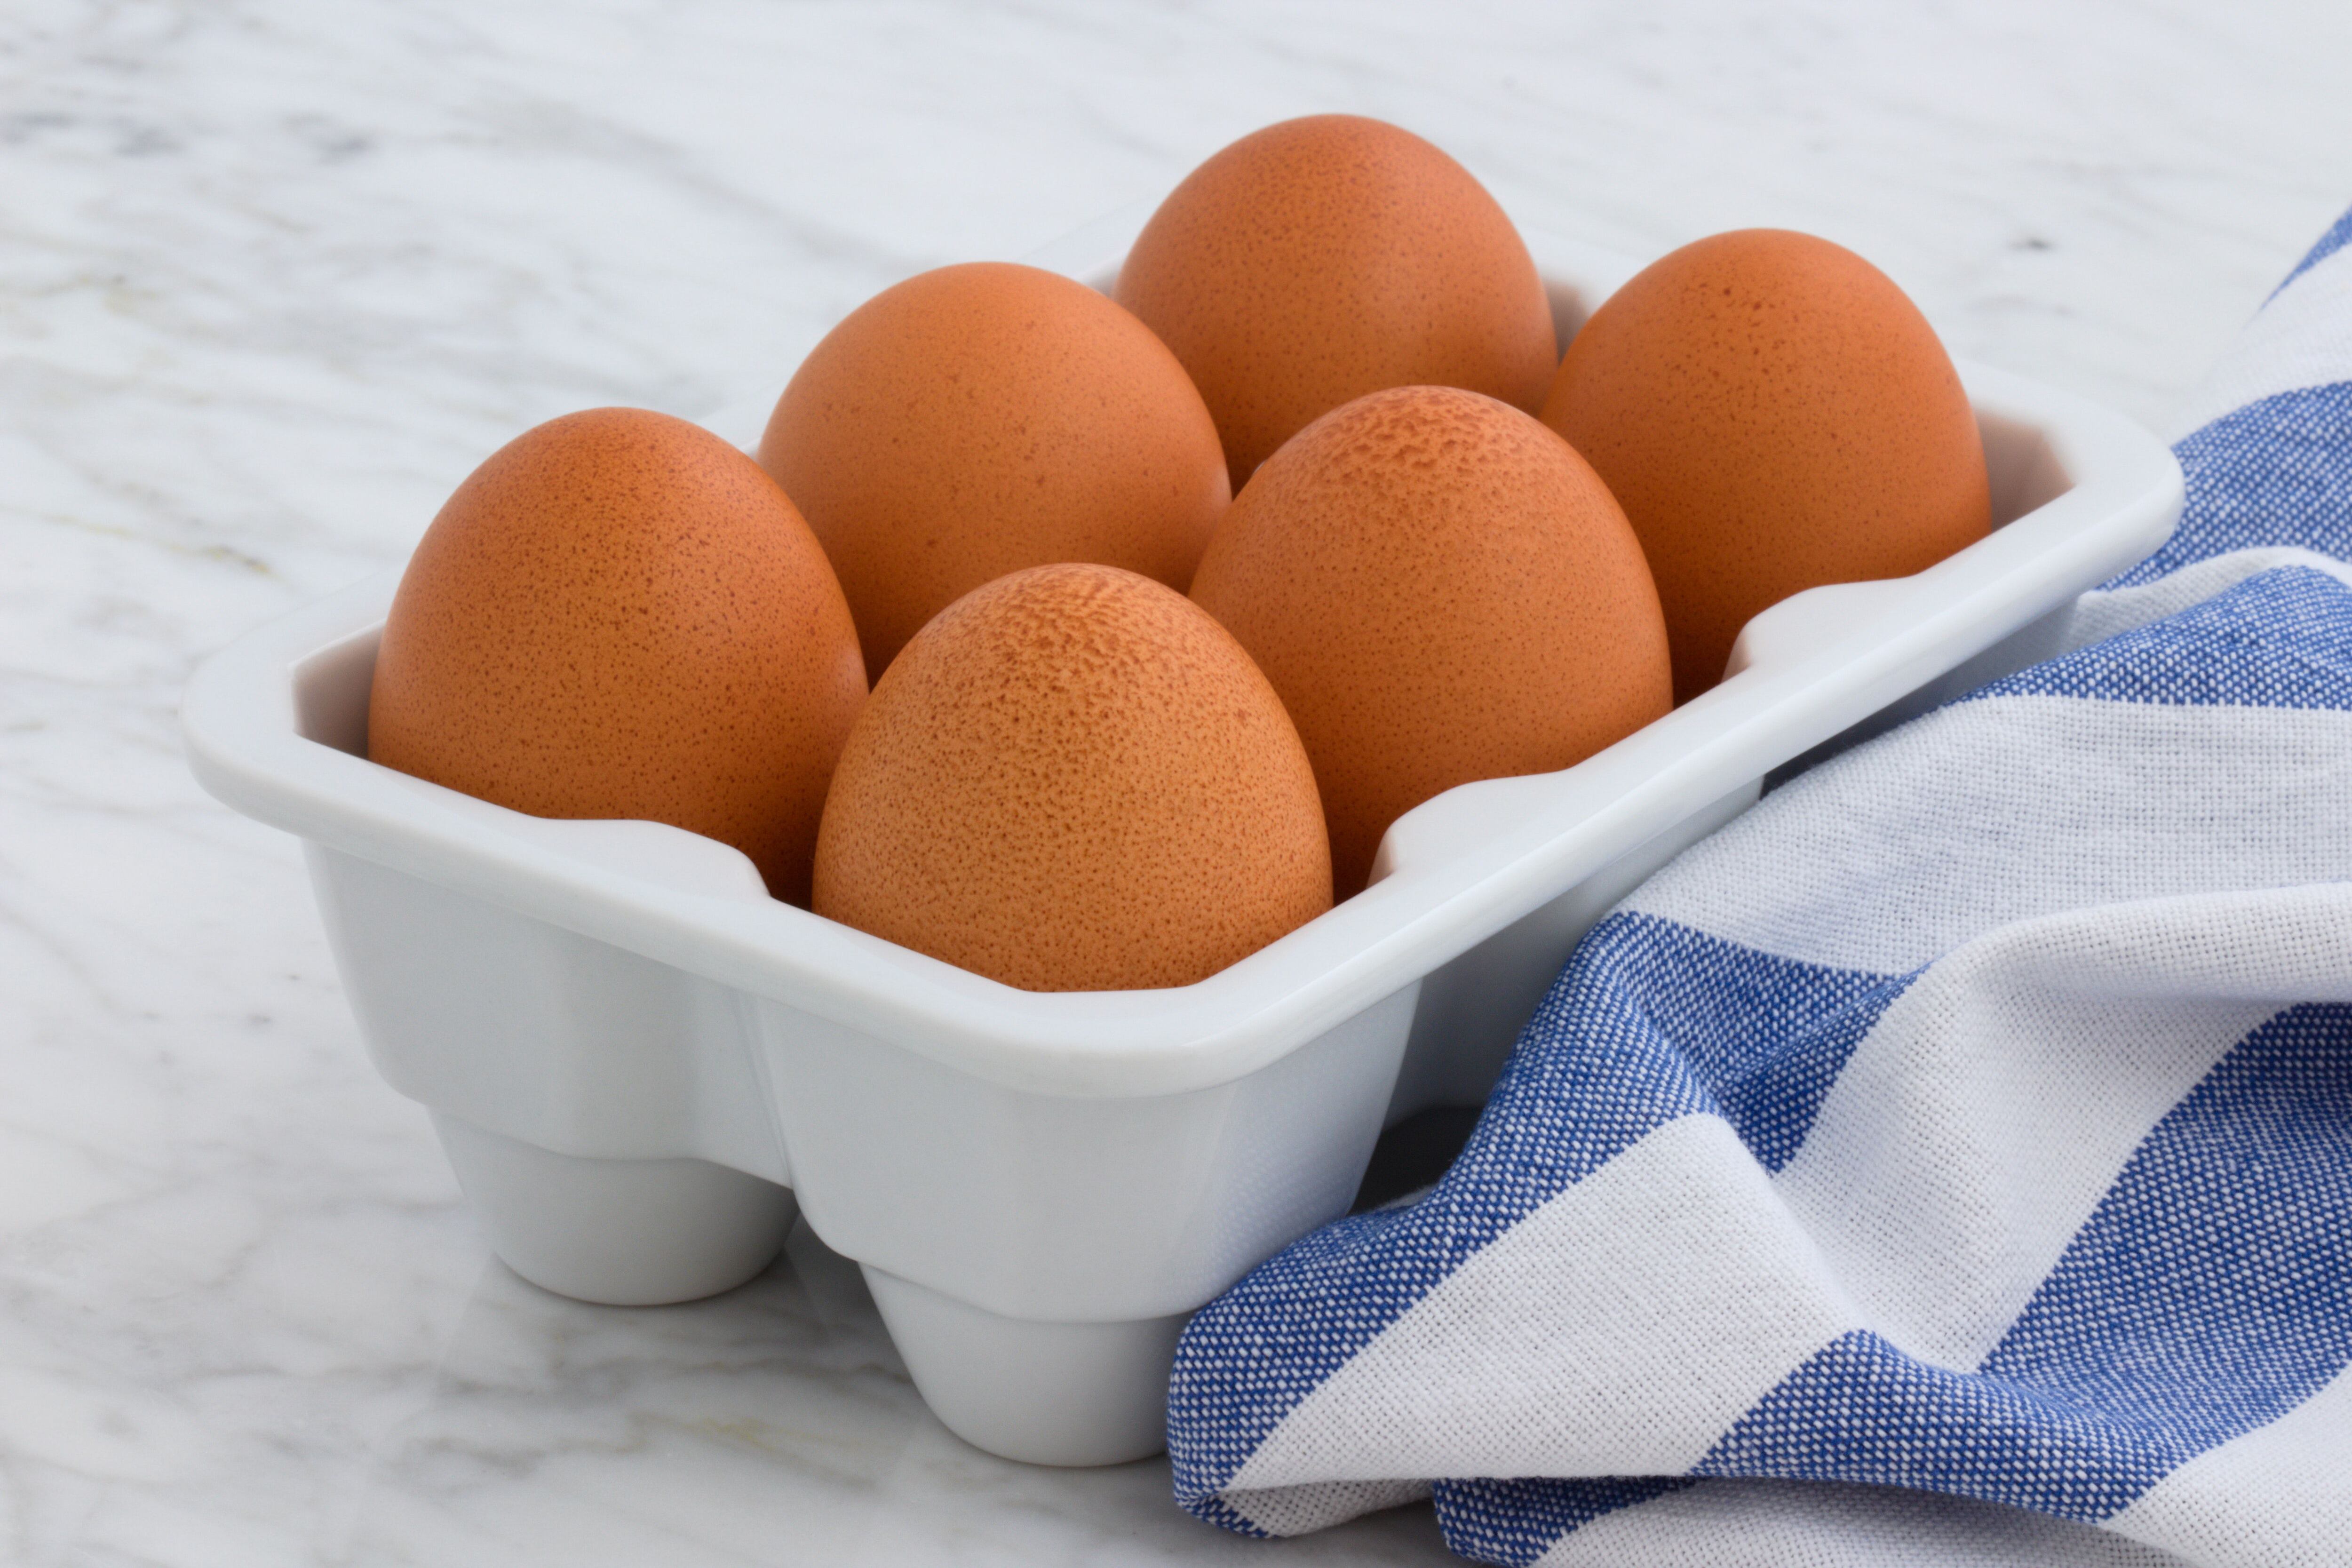 Los huevos contienen colina, una sustancia beneficiosa para el funcionamiento del cuerpo.